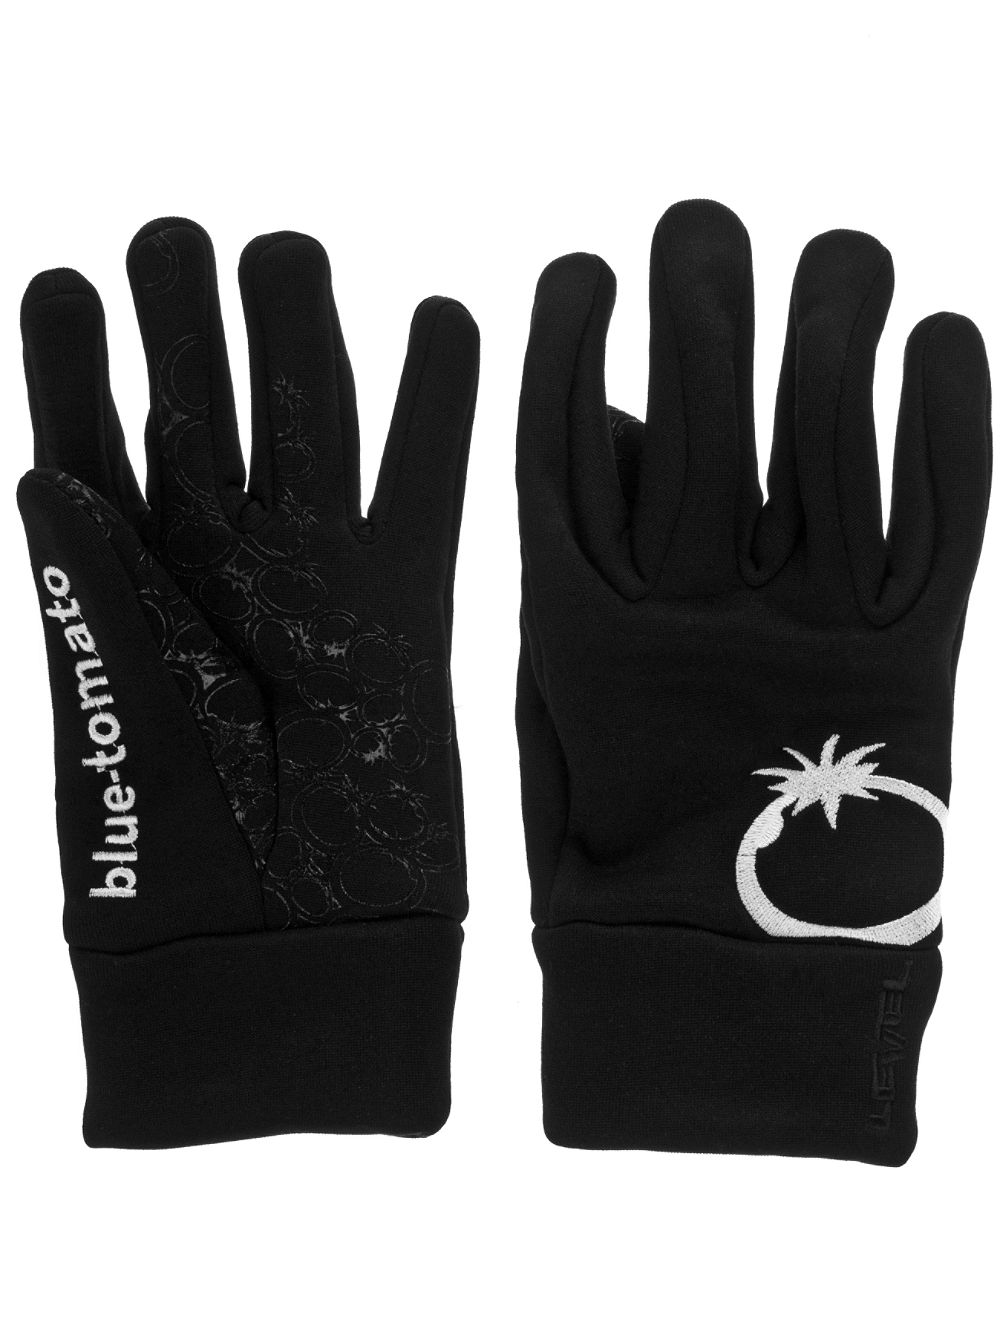 BT Warm Fingers Stretch Gloves